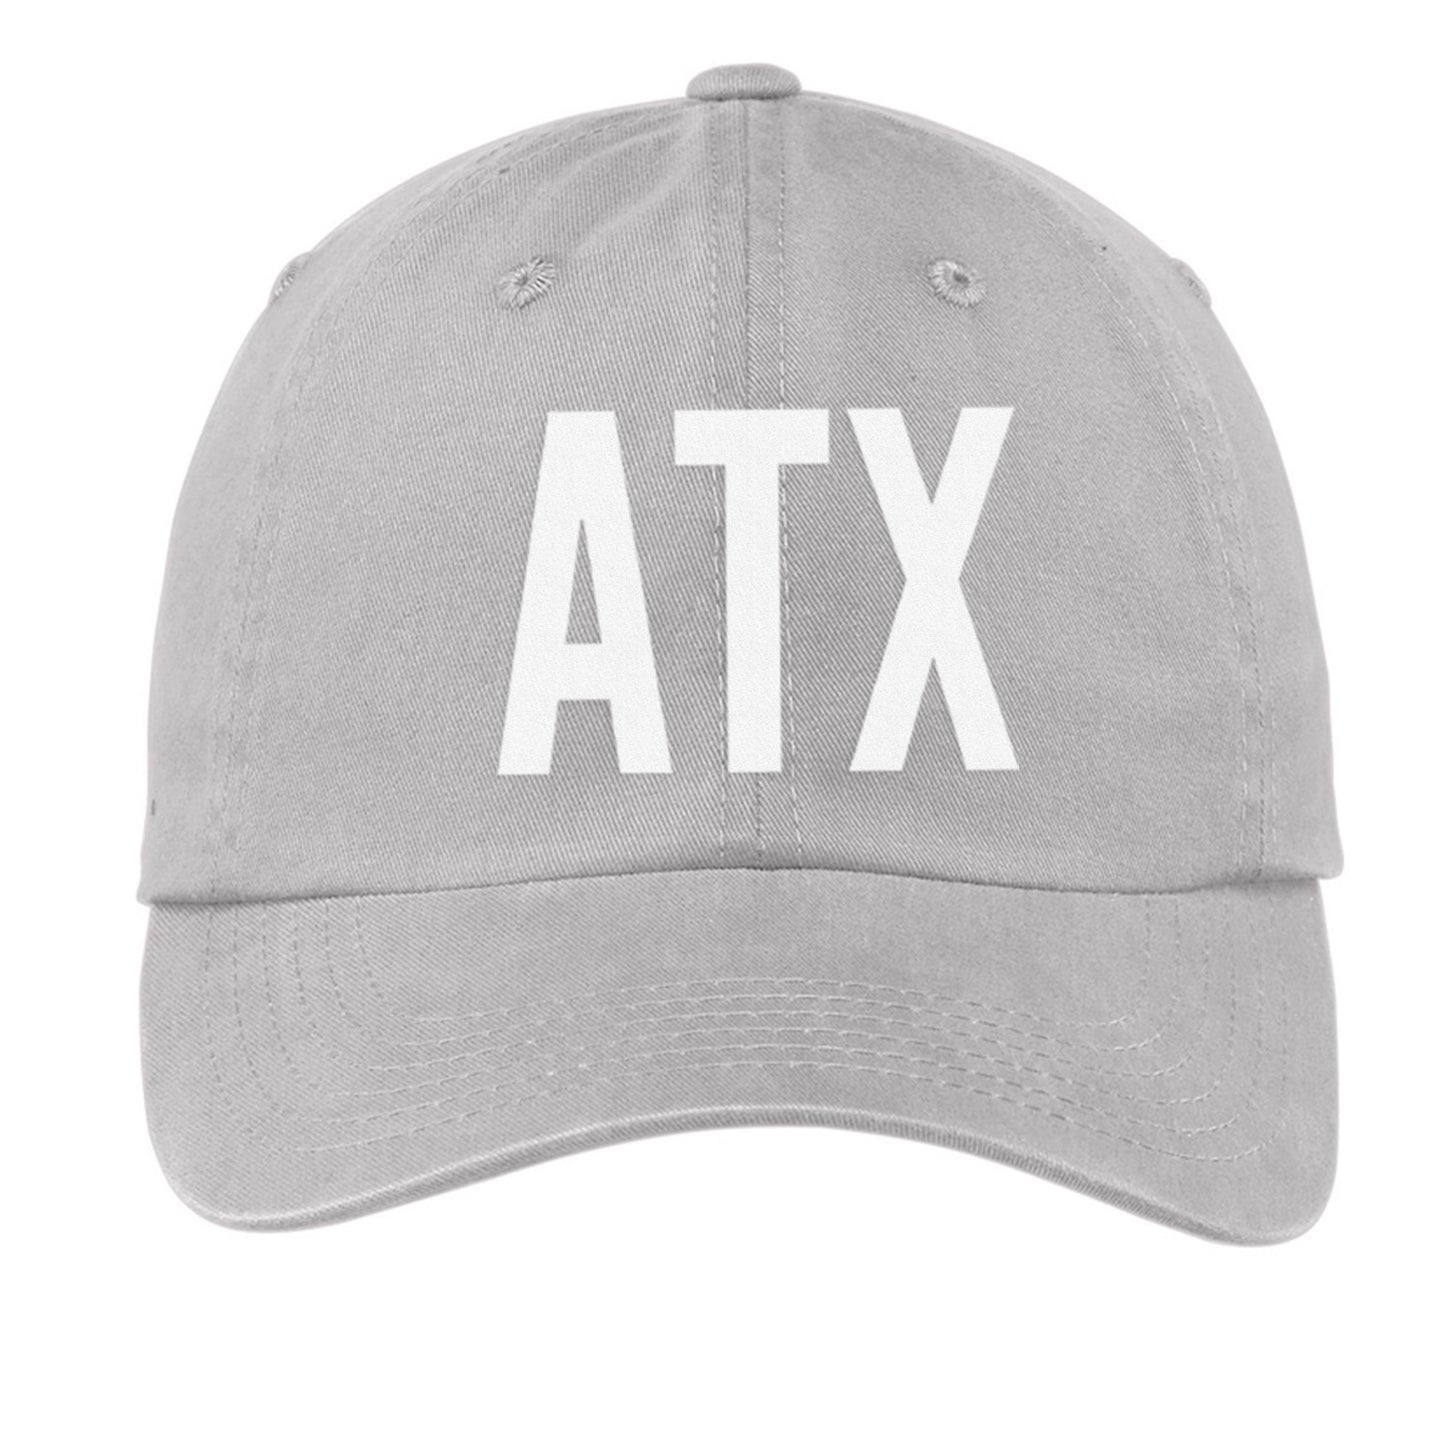 ATX Baseball Cap